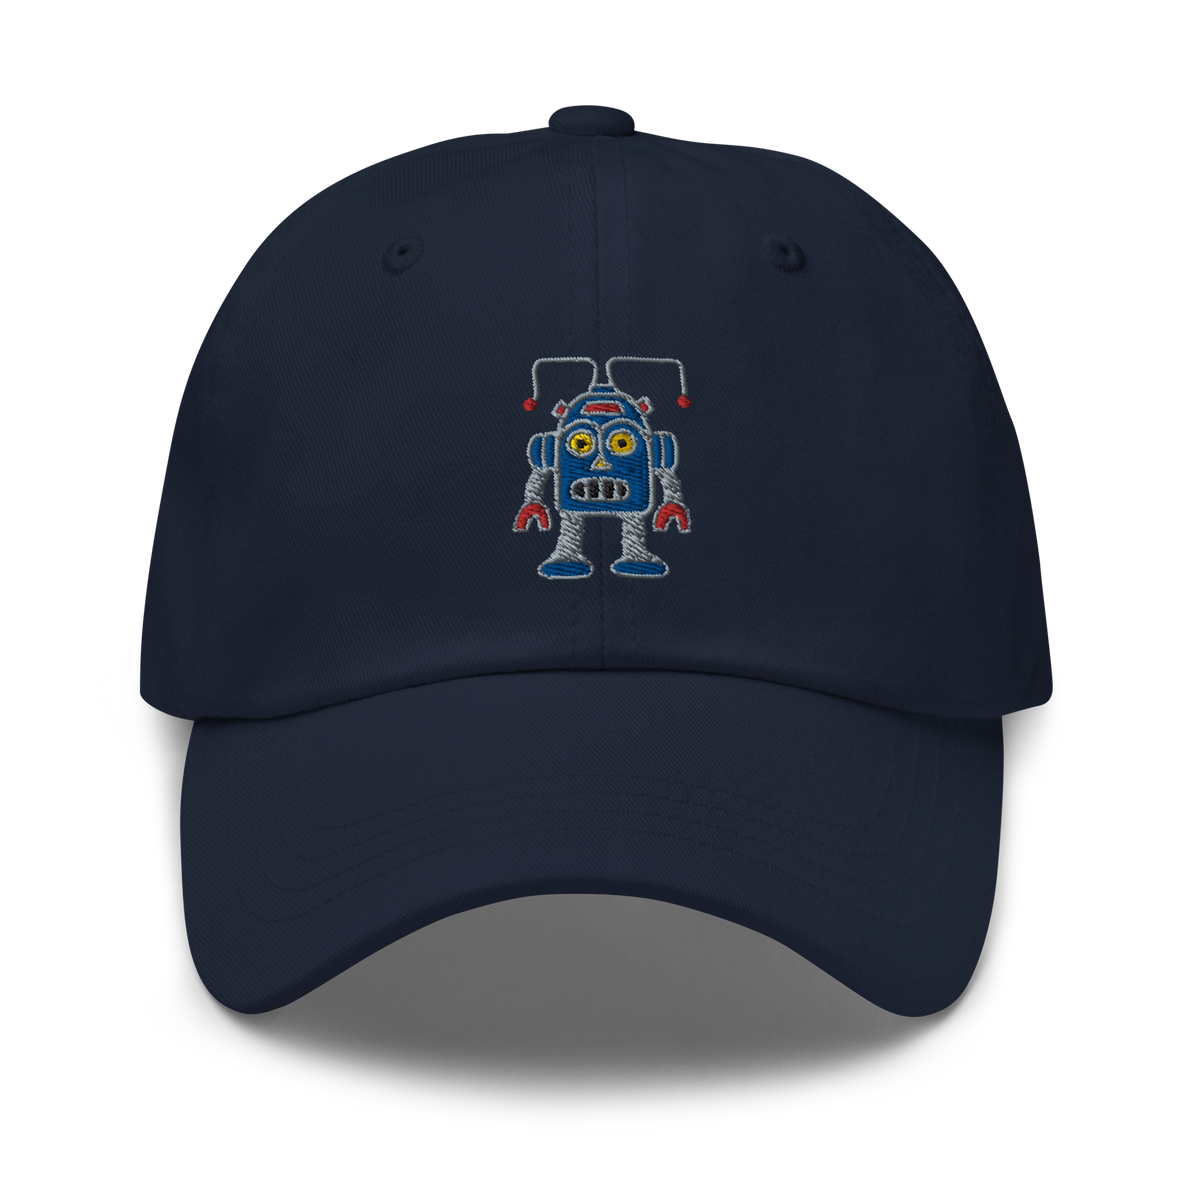 Navy Thunderbot Hat by Ridgeline Arts